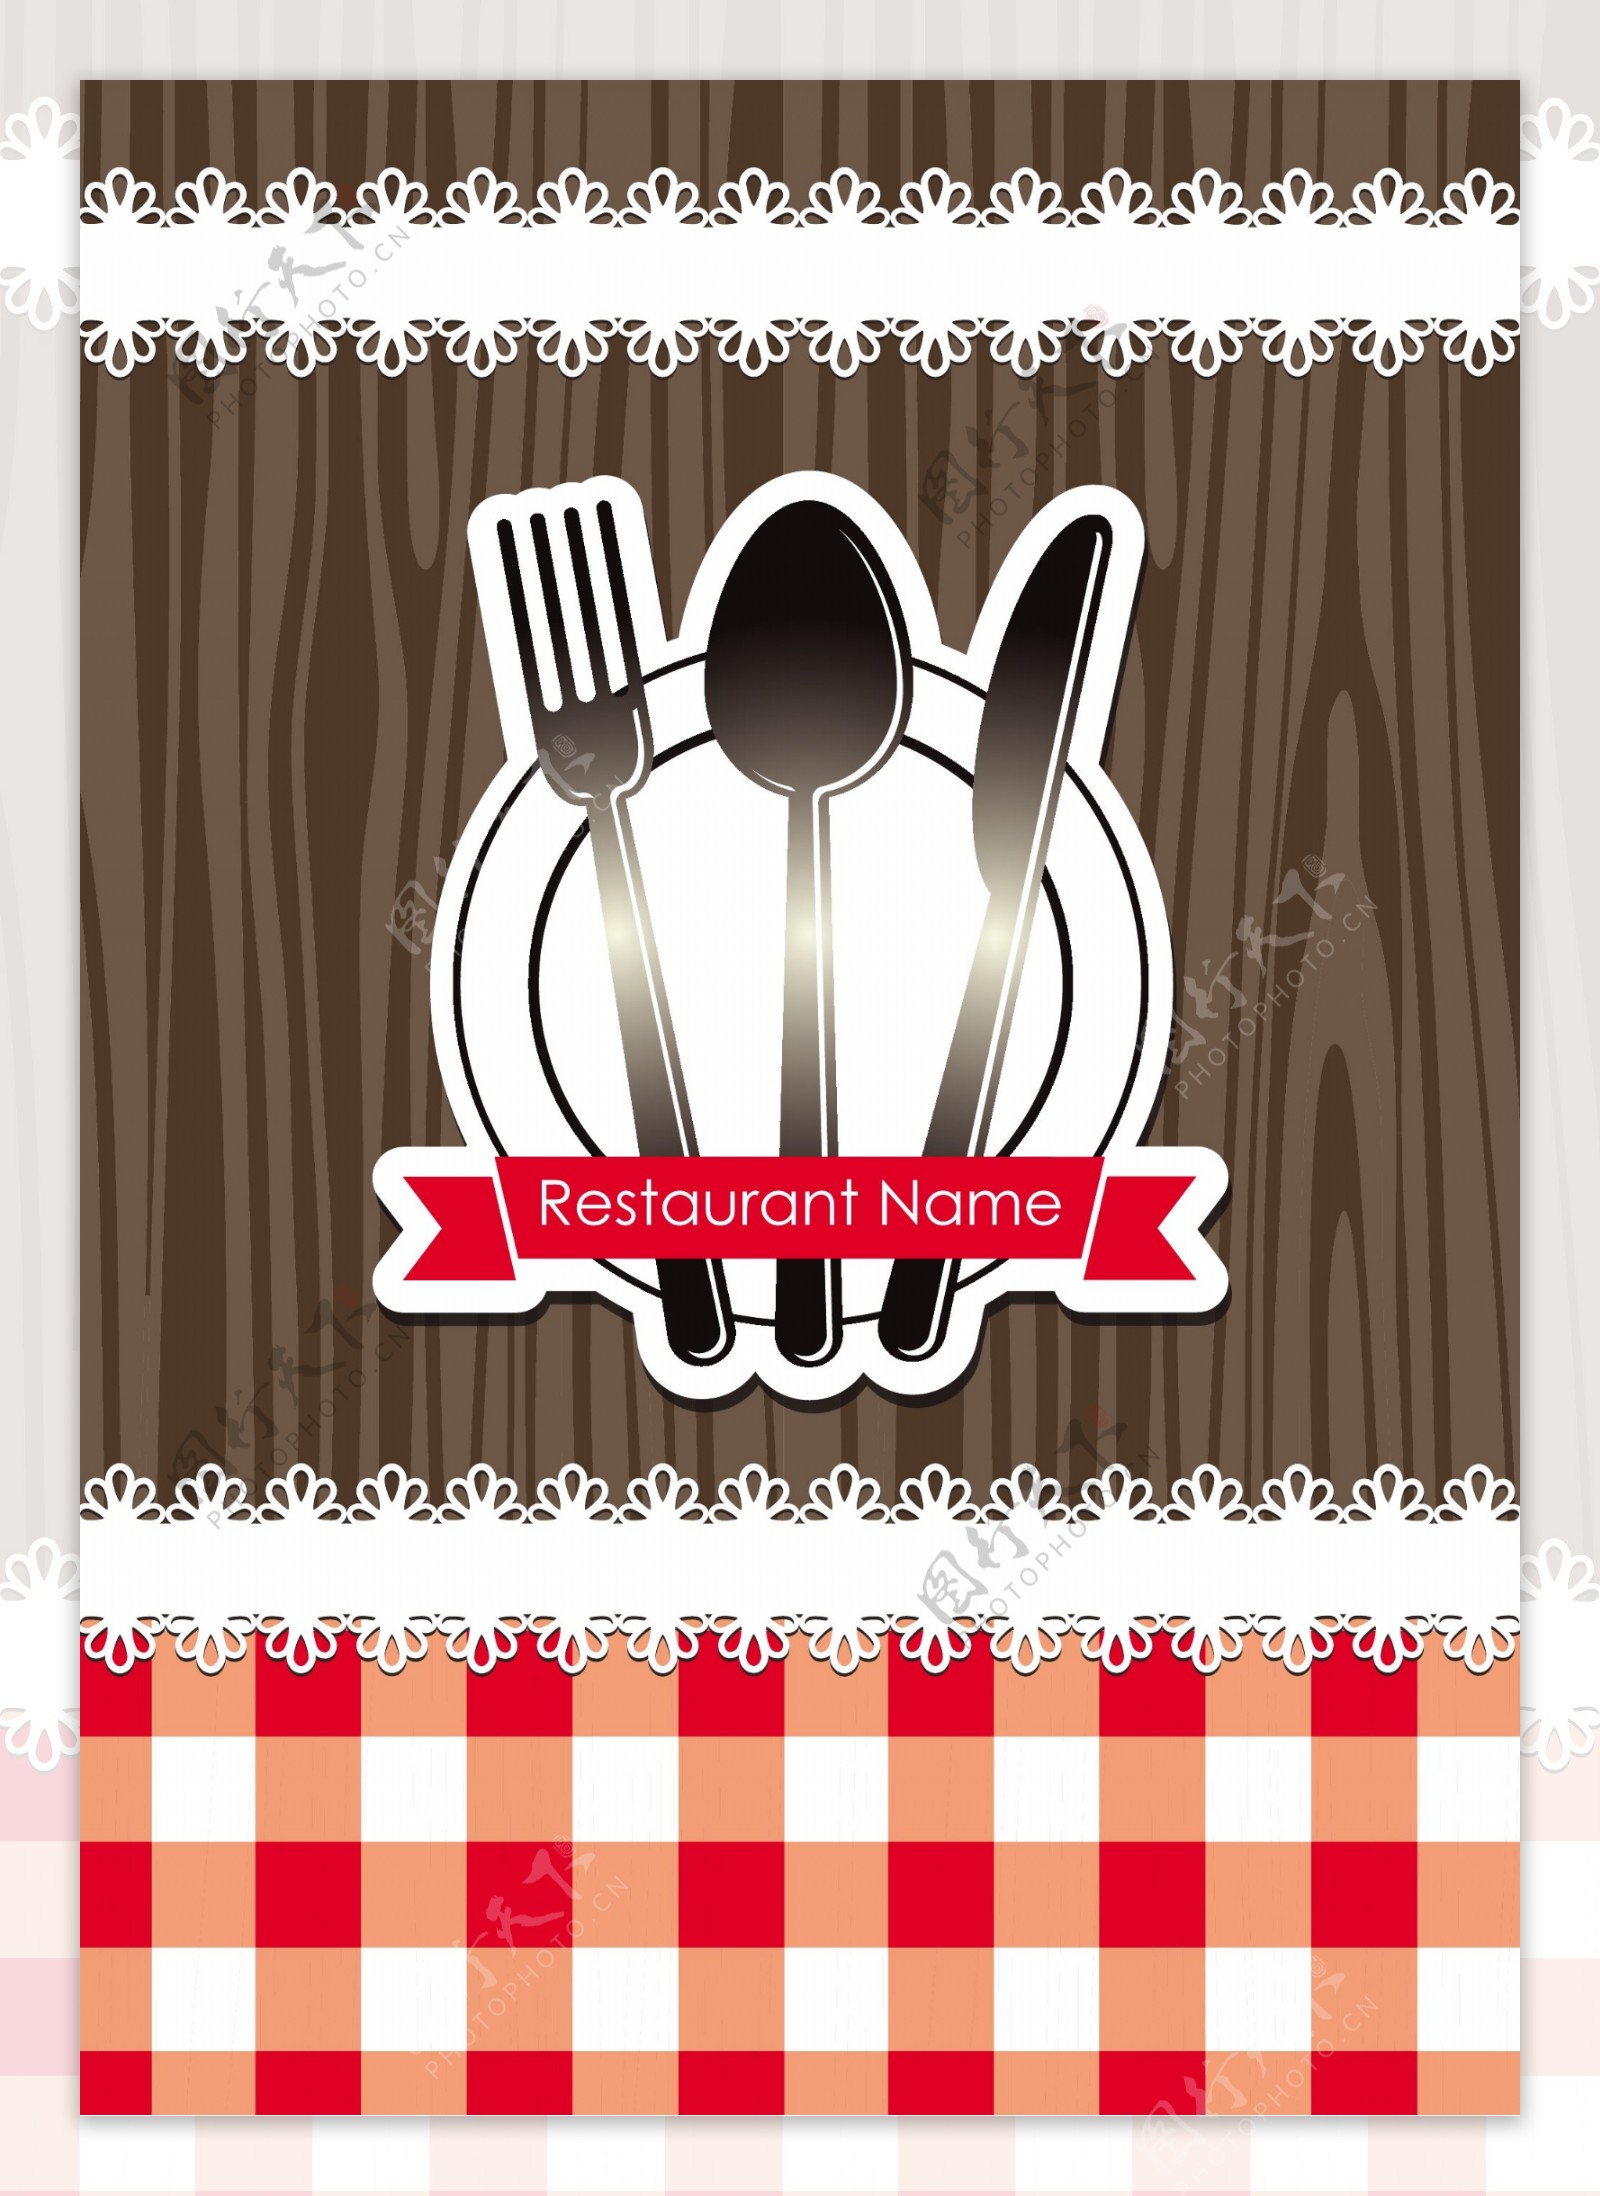 西餐海报红格子桌布刀叉图案素材